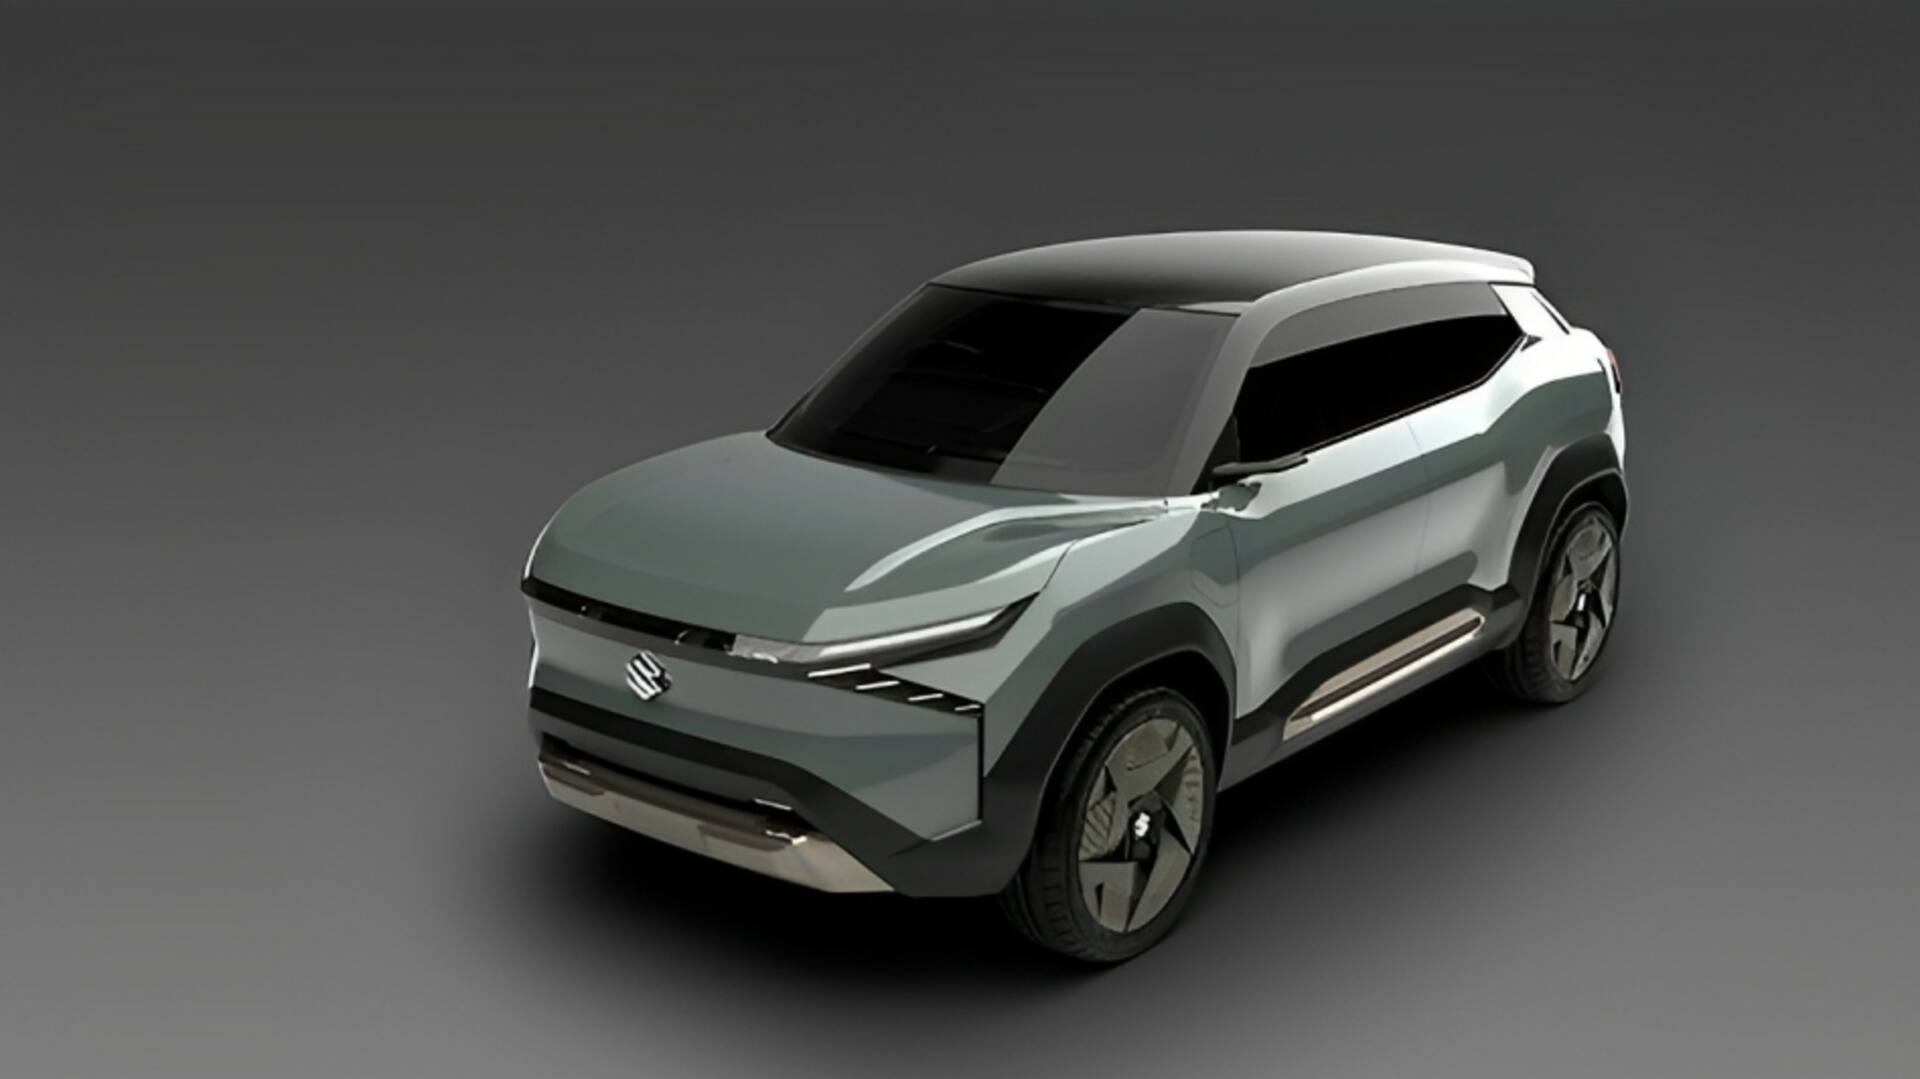 मारुति सुजुकी eVX इलेक्ट्रिक कार मार्च 2025 तक होगी लॉन्च, कंपनी ने की पुष्टि 